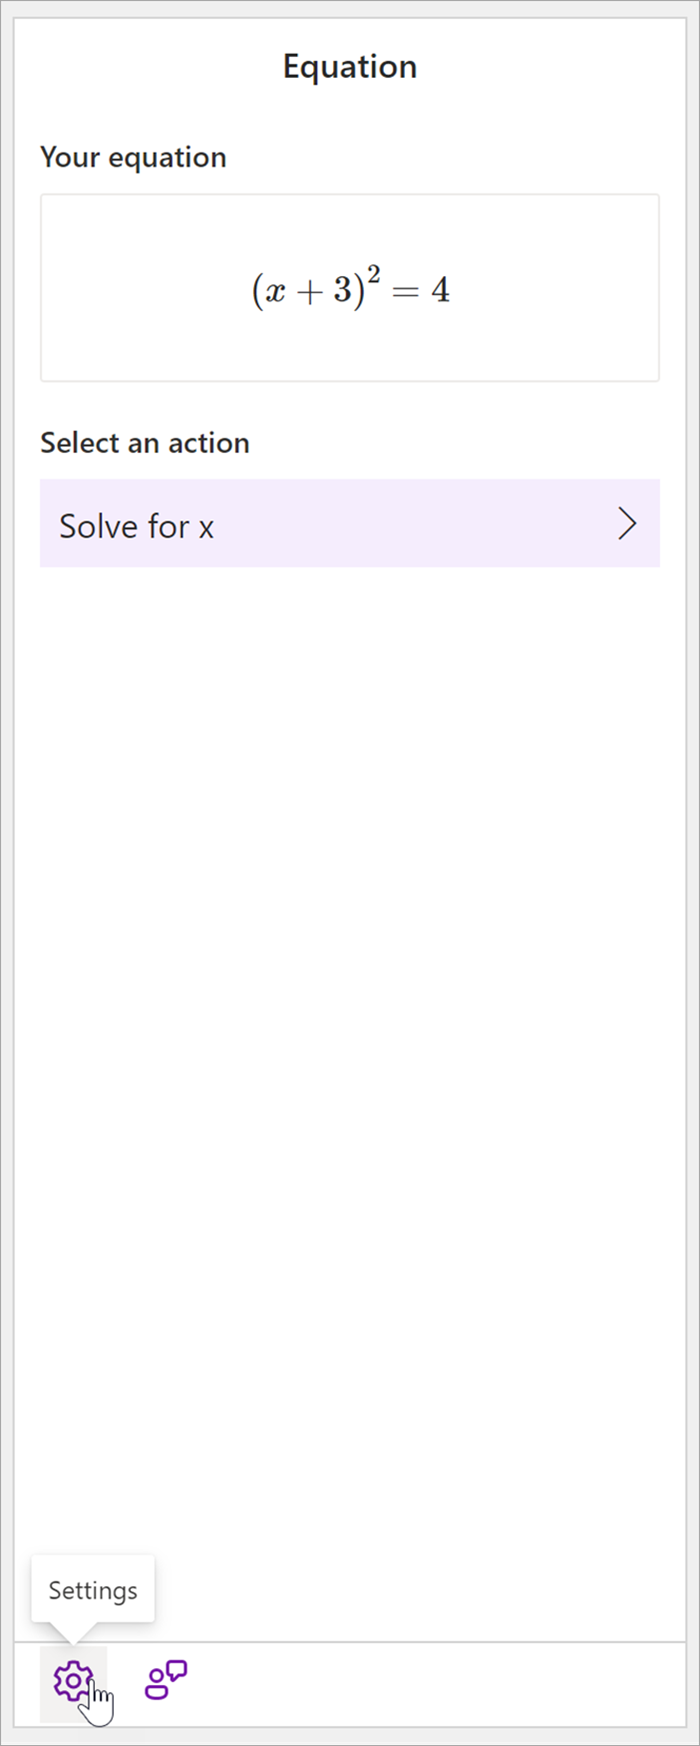 екранна снимка на математическия екран на работния плот на OneNote с уравнението (x+3)^2=4. В секцията Избор на действие единственото налично действие е Solve fore x.